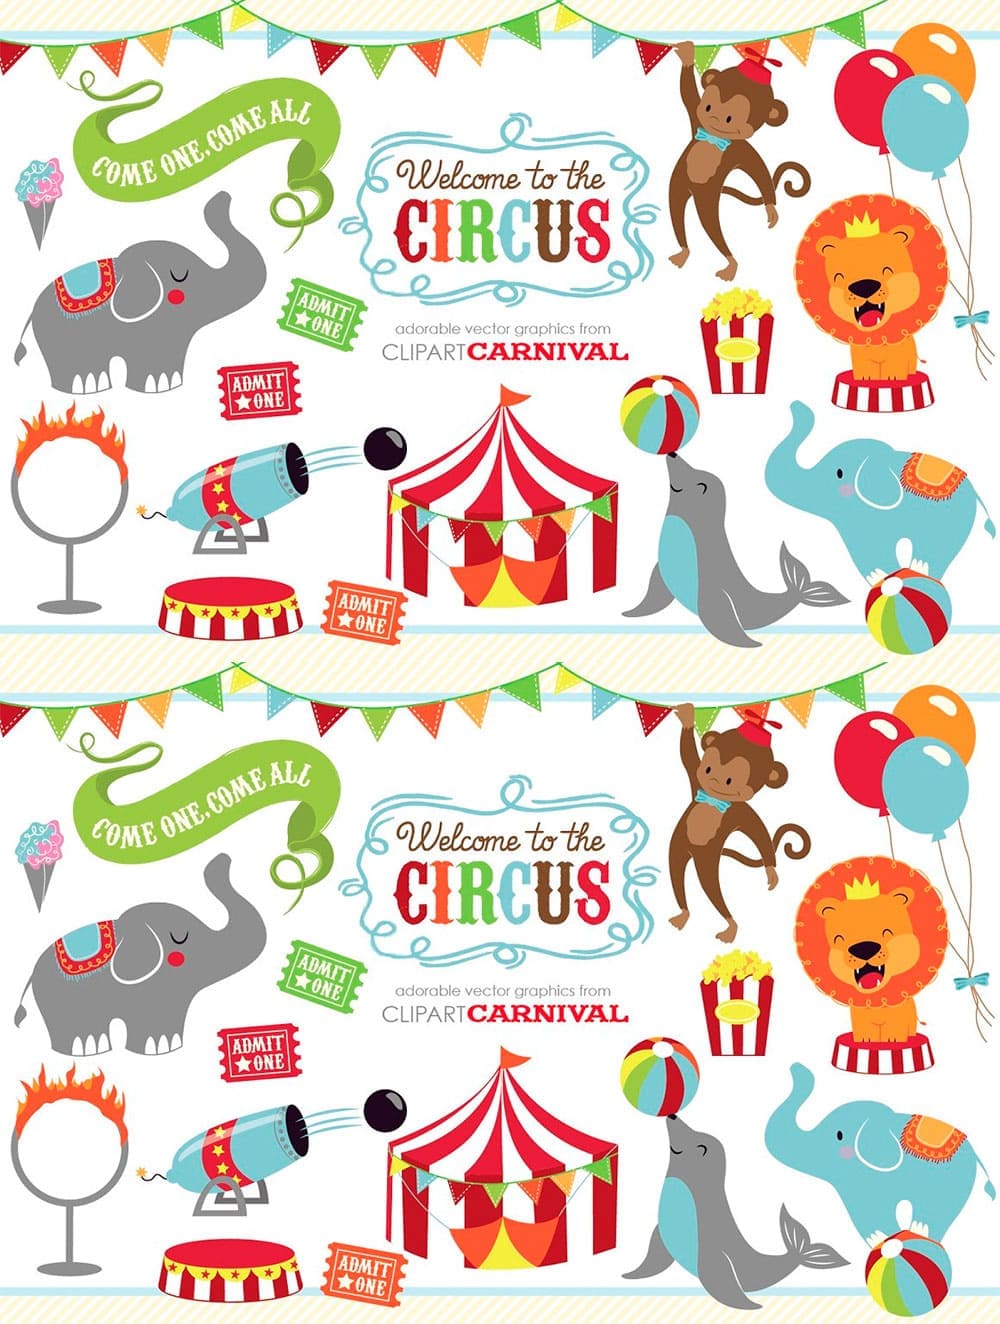 cute circus animals clipart